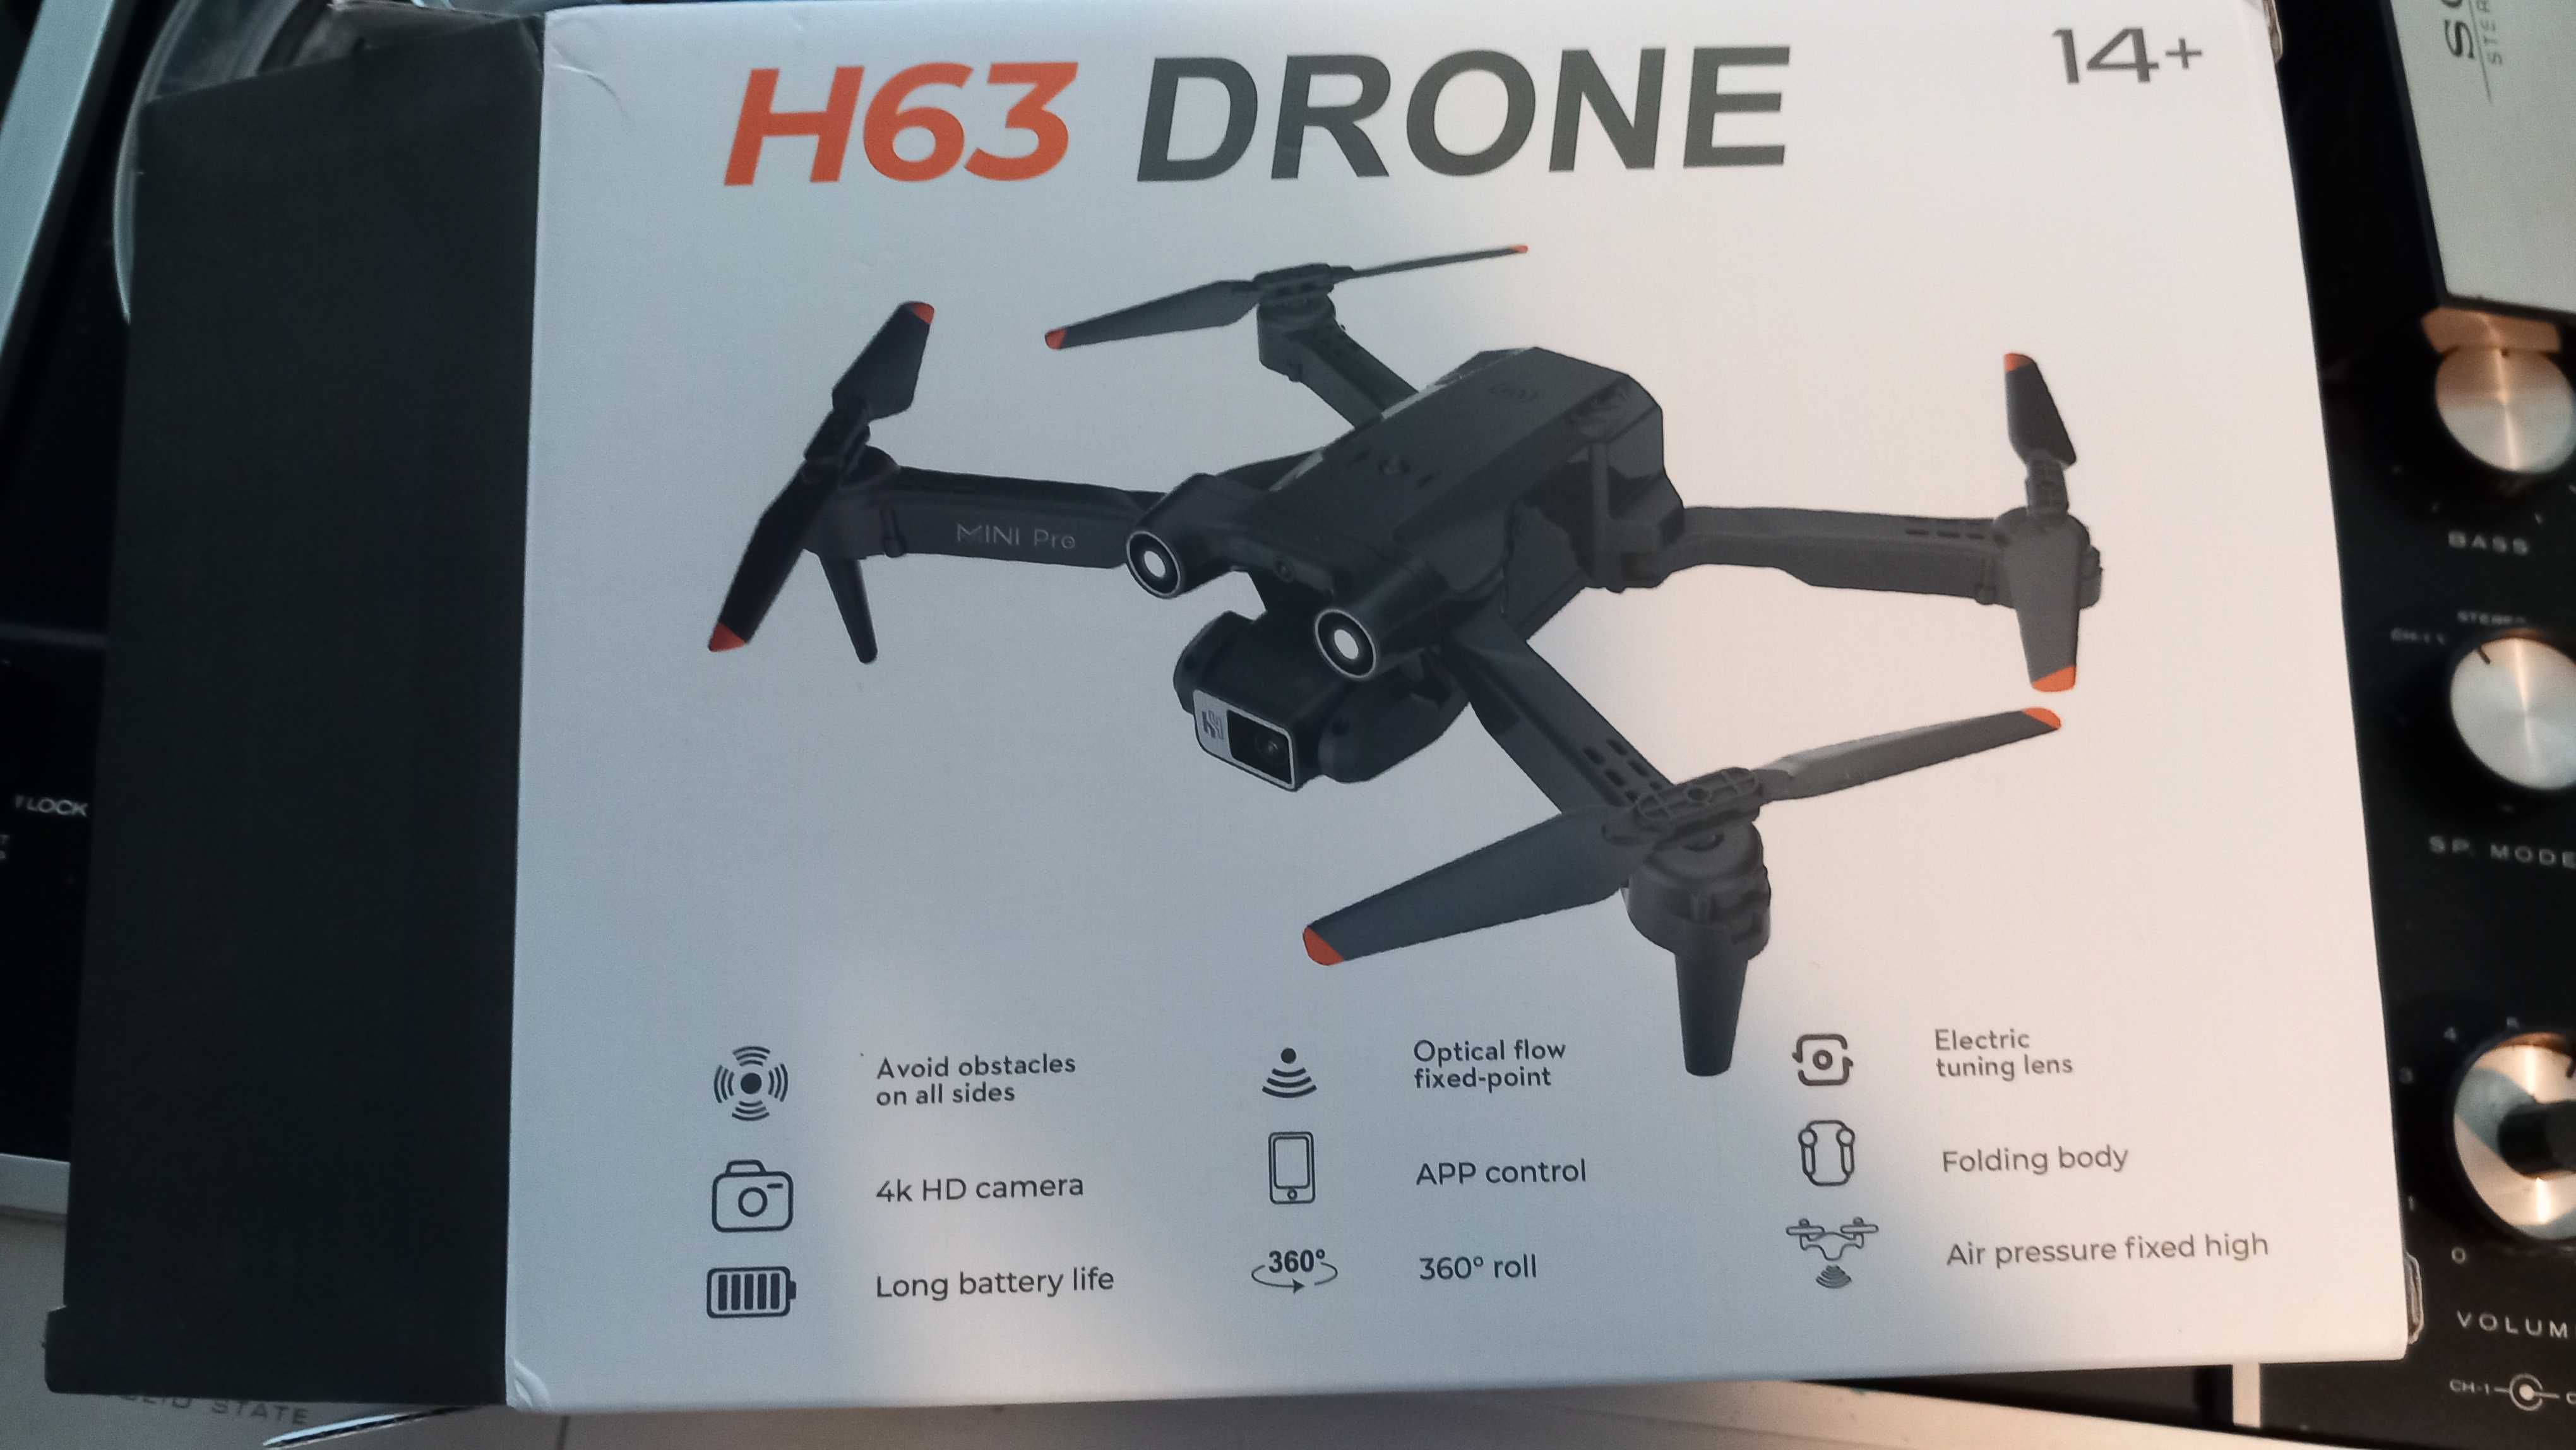 Drone h63 novo ainda na caixa